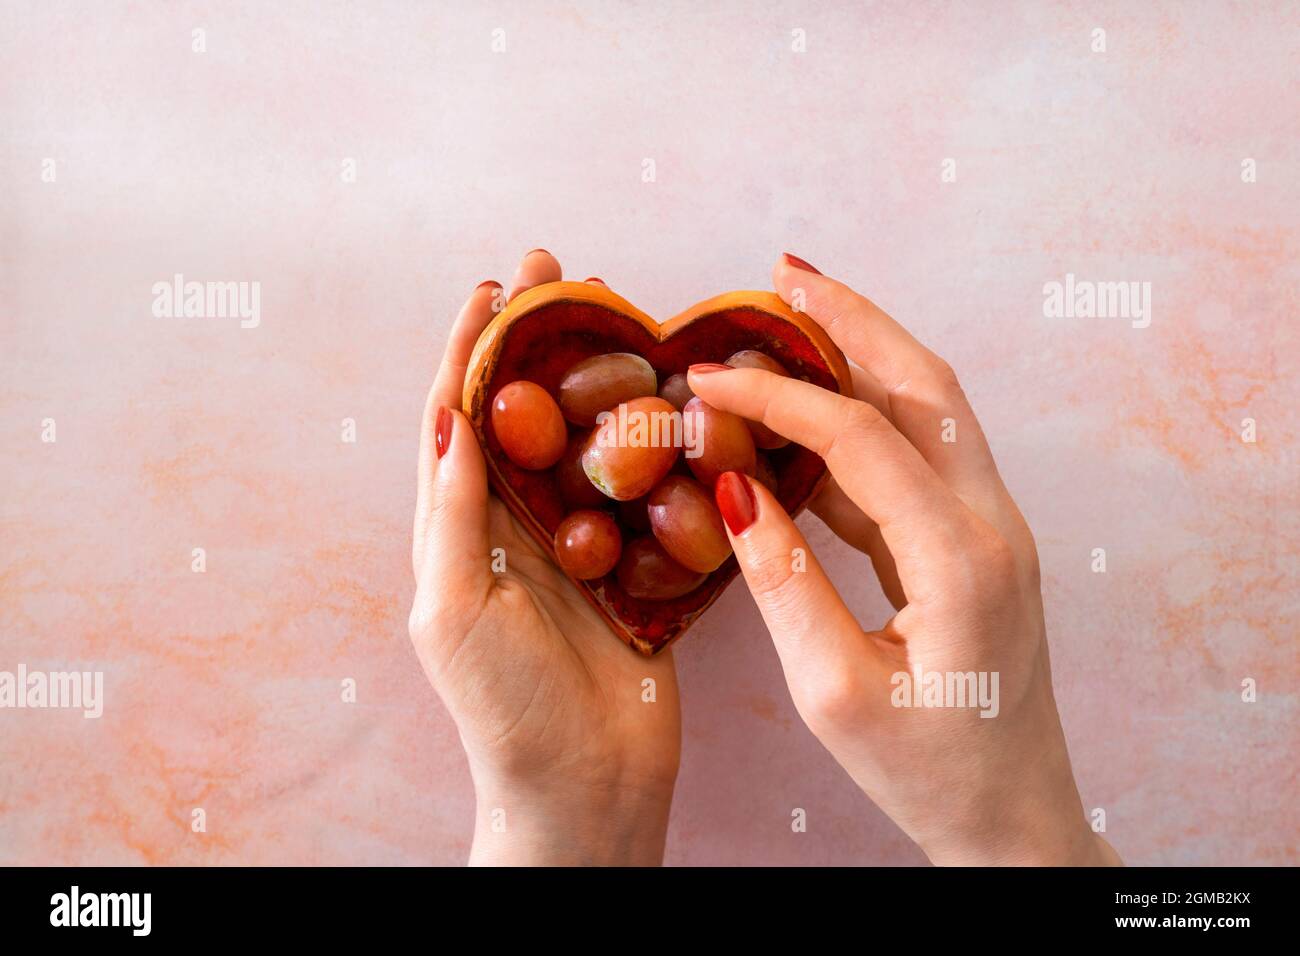 Manos de mujeres sosteniendo un plato en forma de corazón y seleccionando una uva. Tradición española de comer 12 uvas a medianoche en la víspera de Año Nuevo. Foto de stock